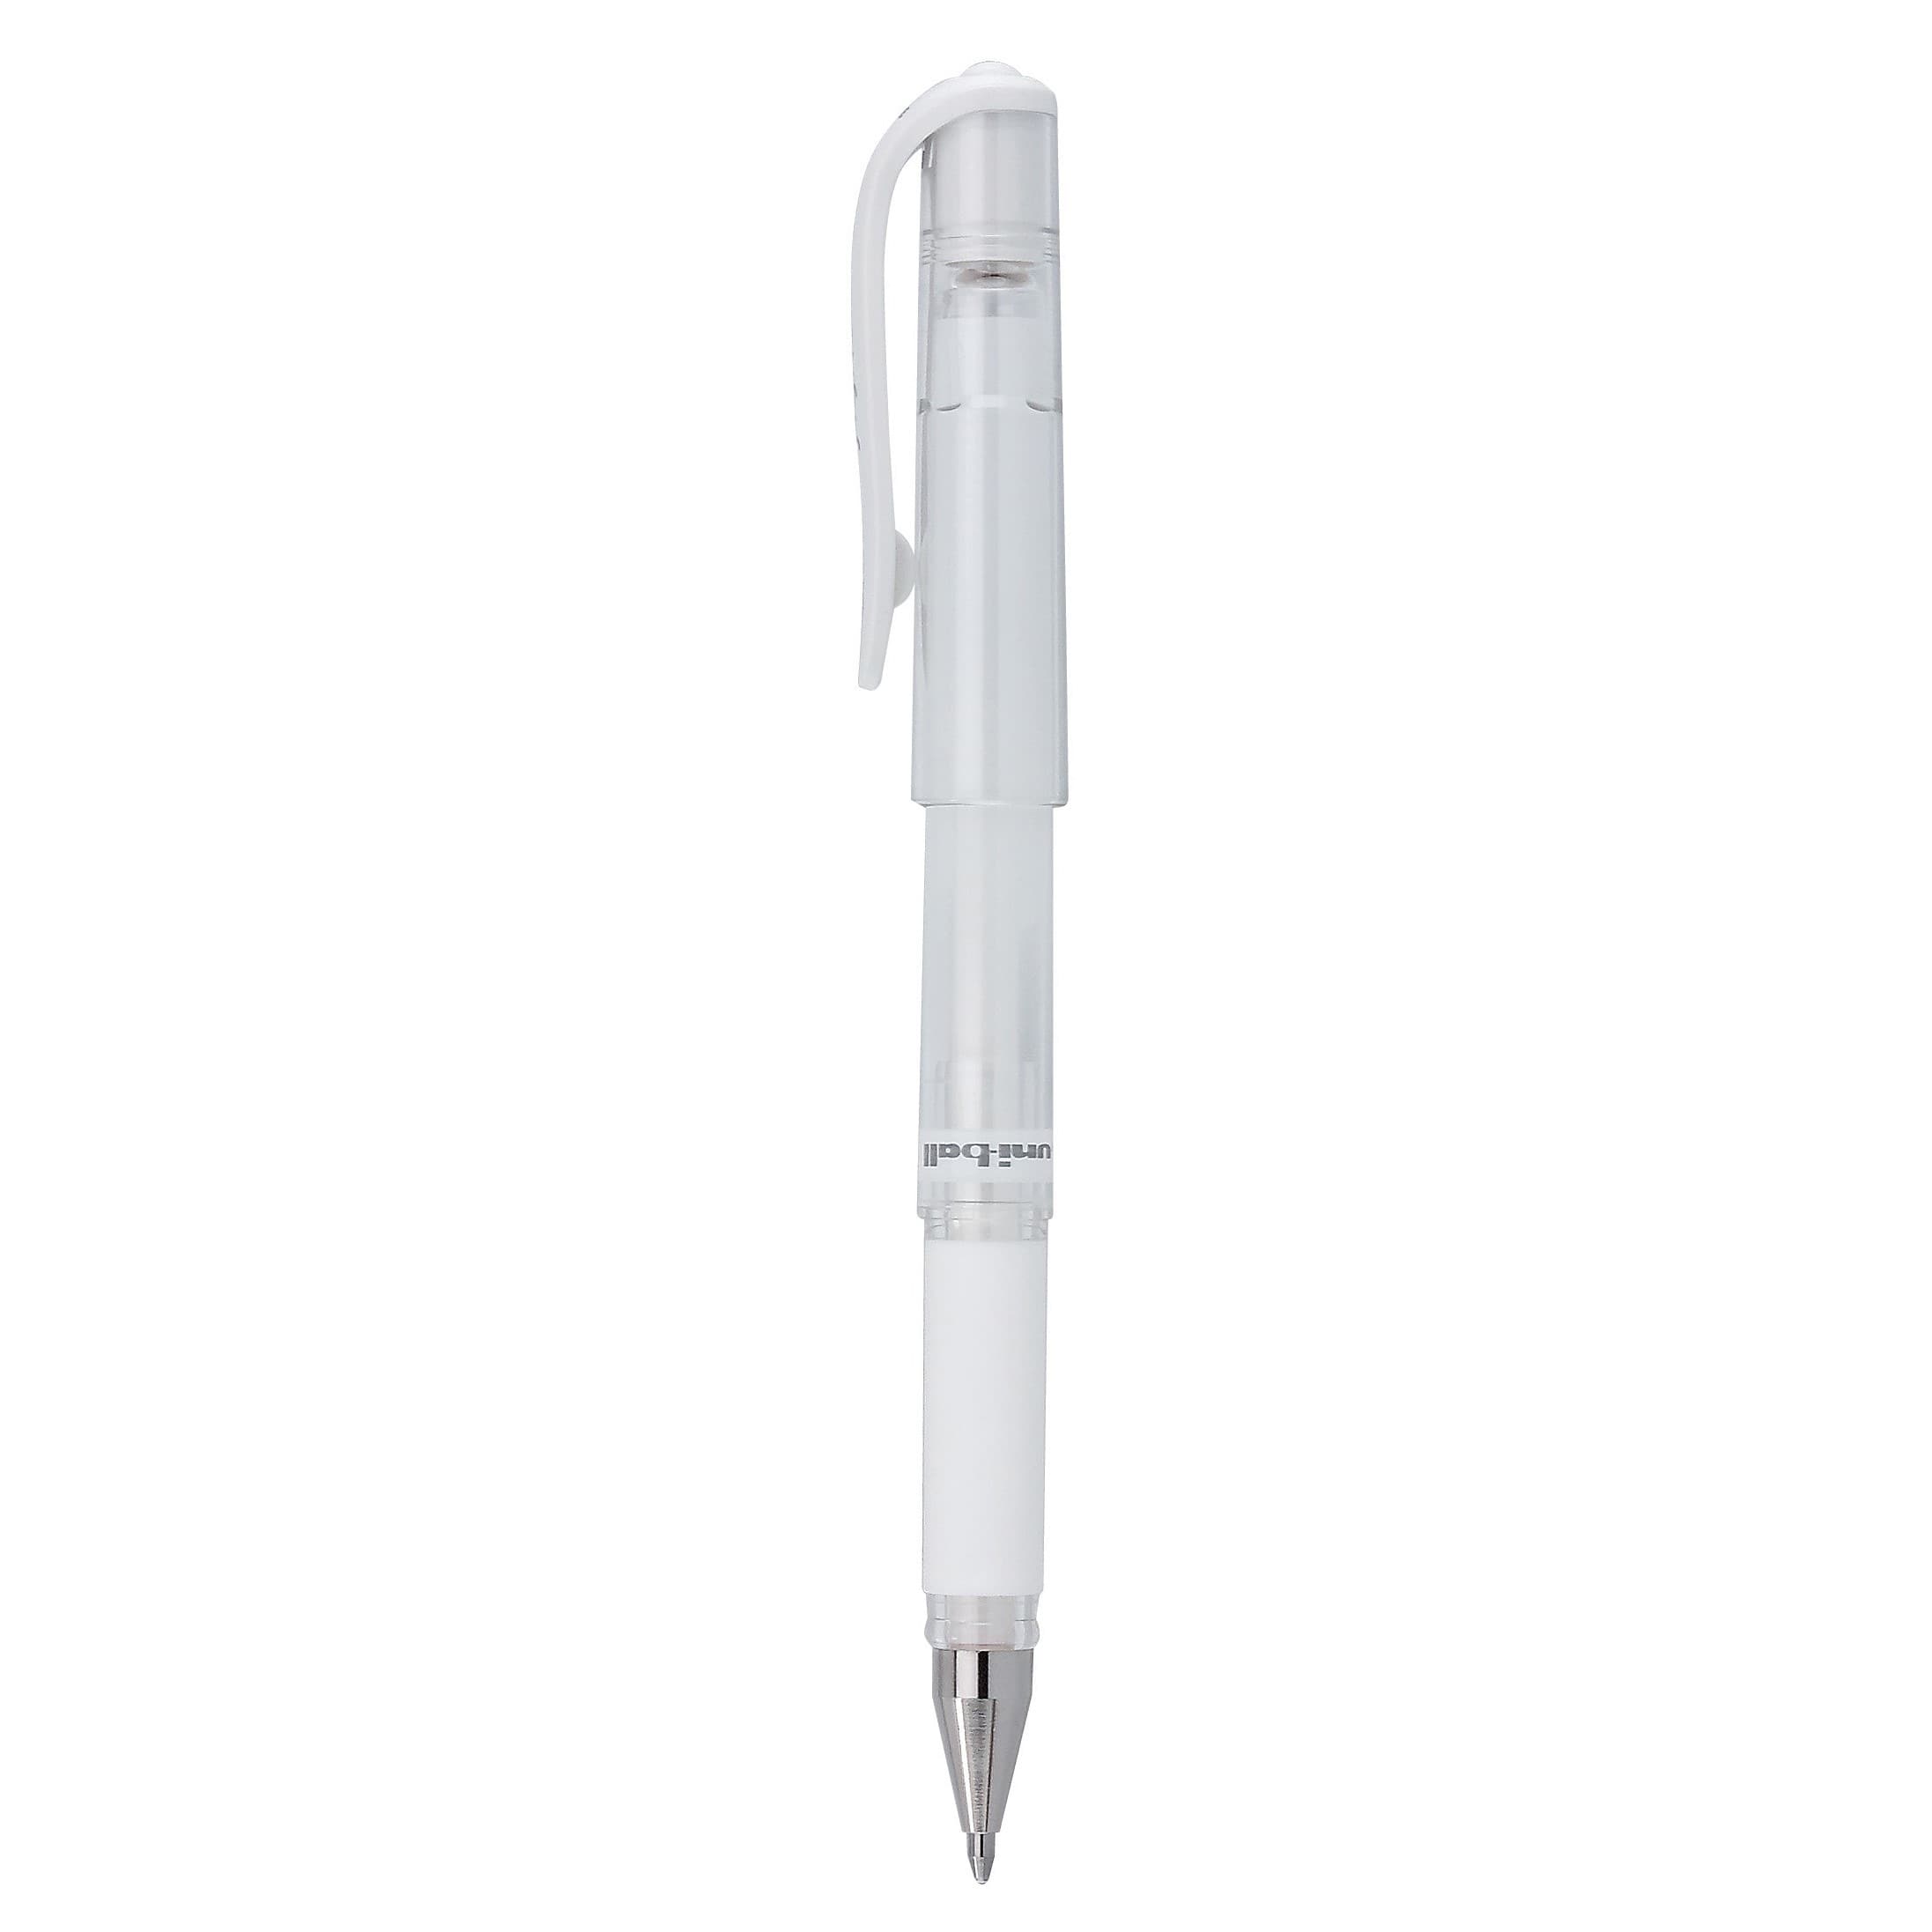 Uniball Signo White Gel Pen White Gel Pen Gel Ink Pen White 